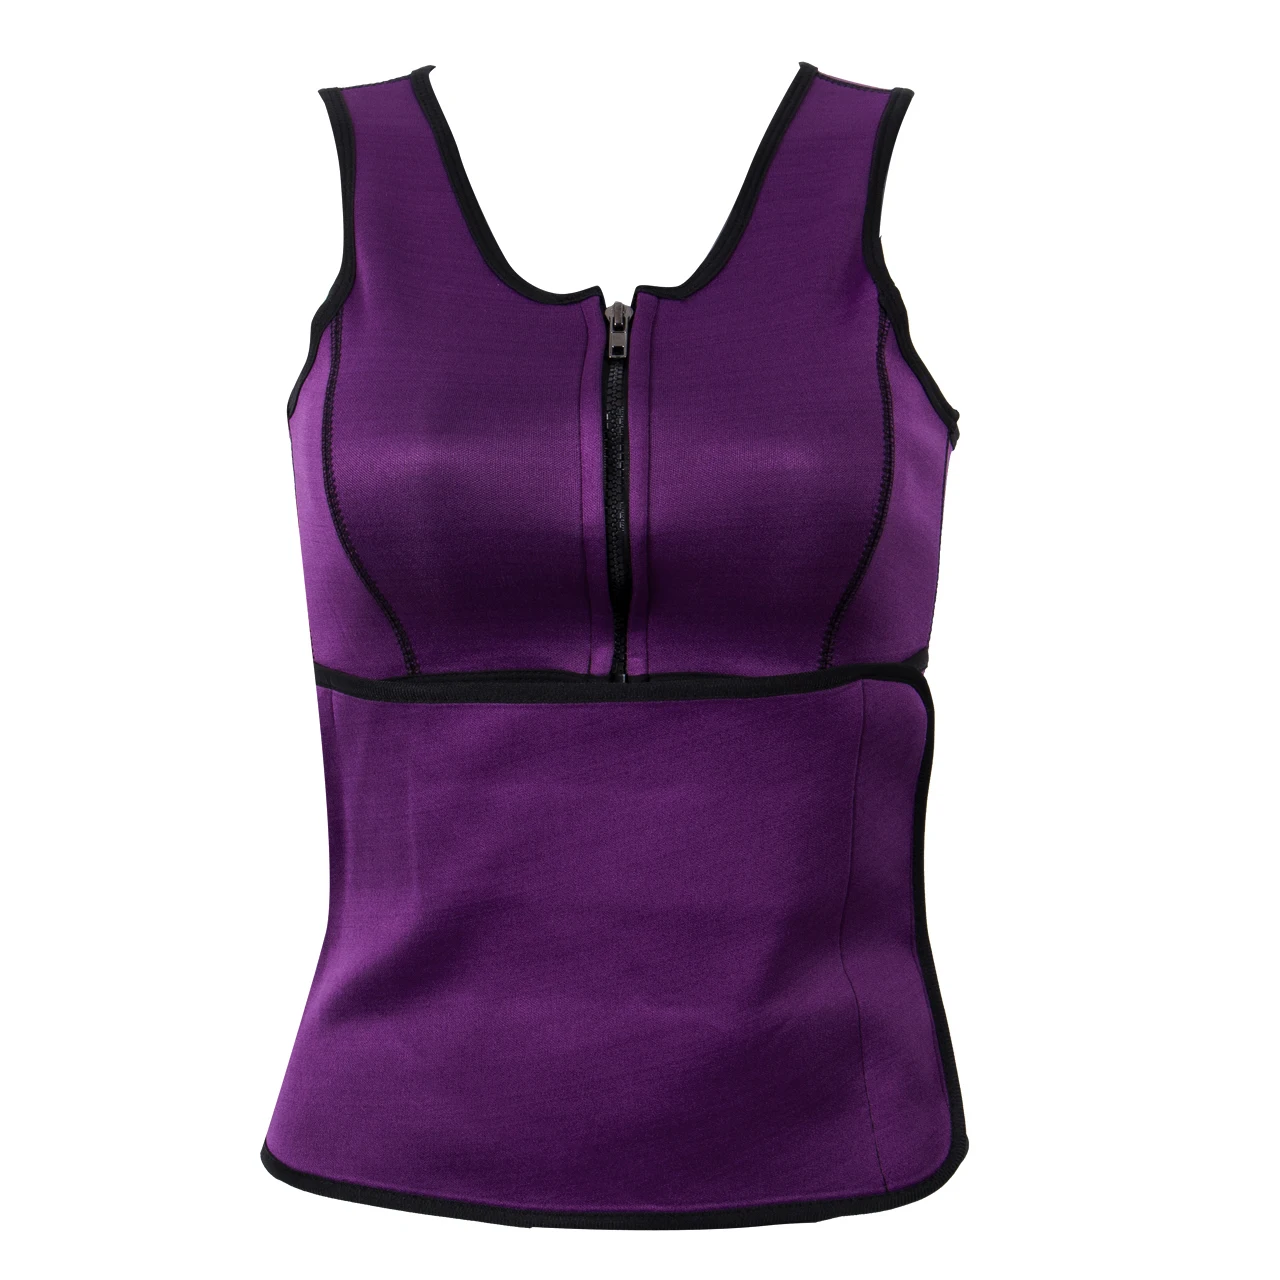 S-3XL тренажер для талии, женское корректирующее белье, спортивный латексный резиновый корректирующий костюм размера плюс, корсет, жилет, пояс для похудения, XXXL, XXL, XL, L - Цвет: Фиолетовый